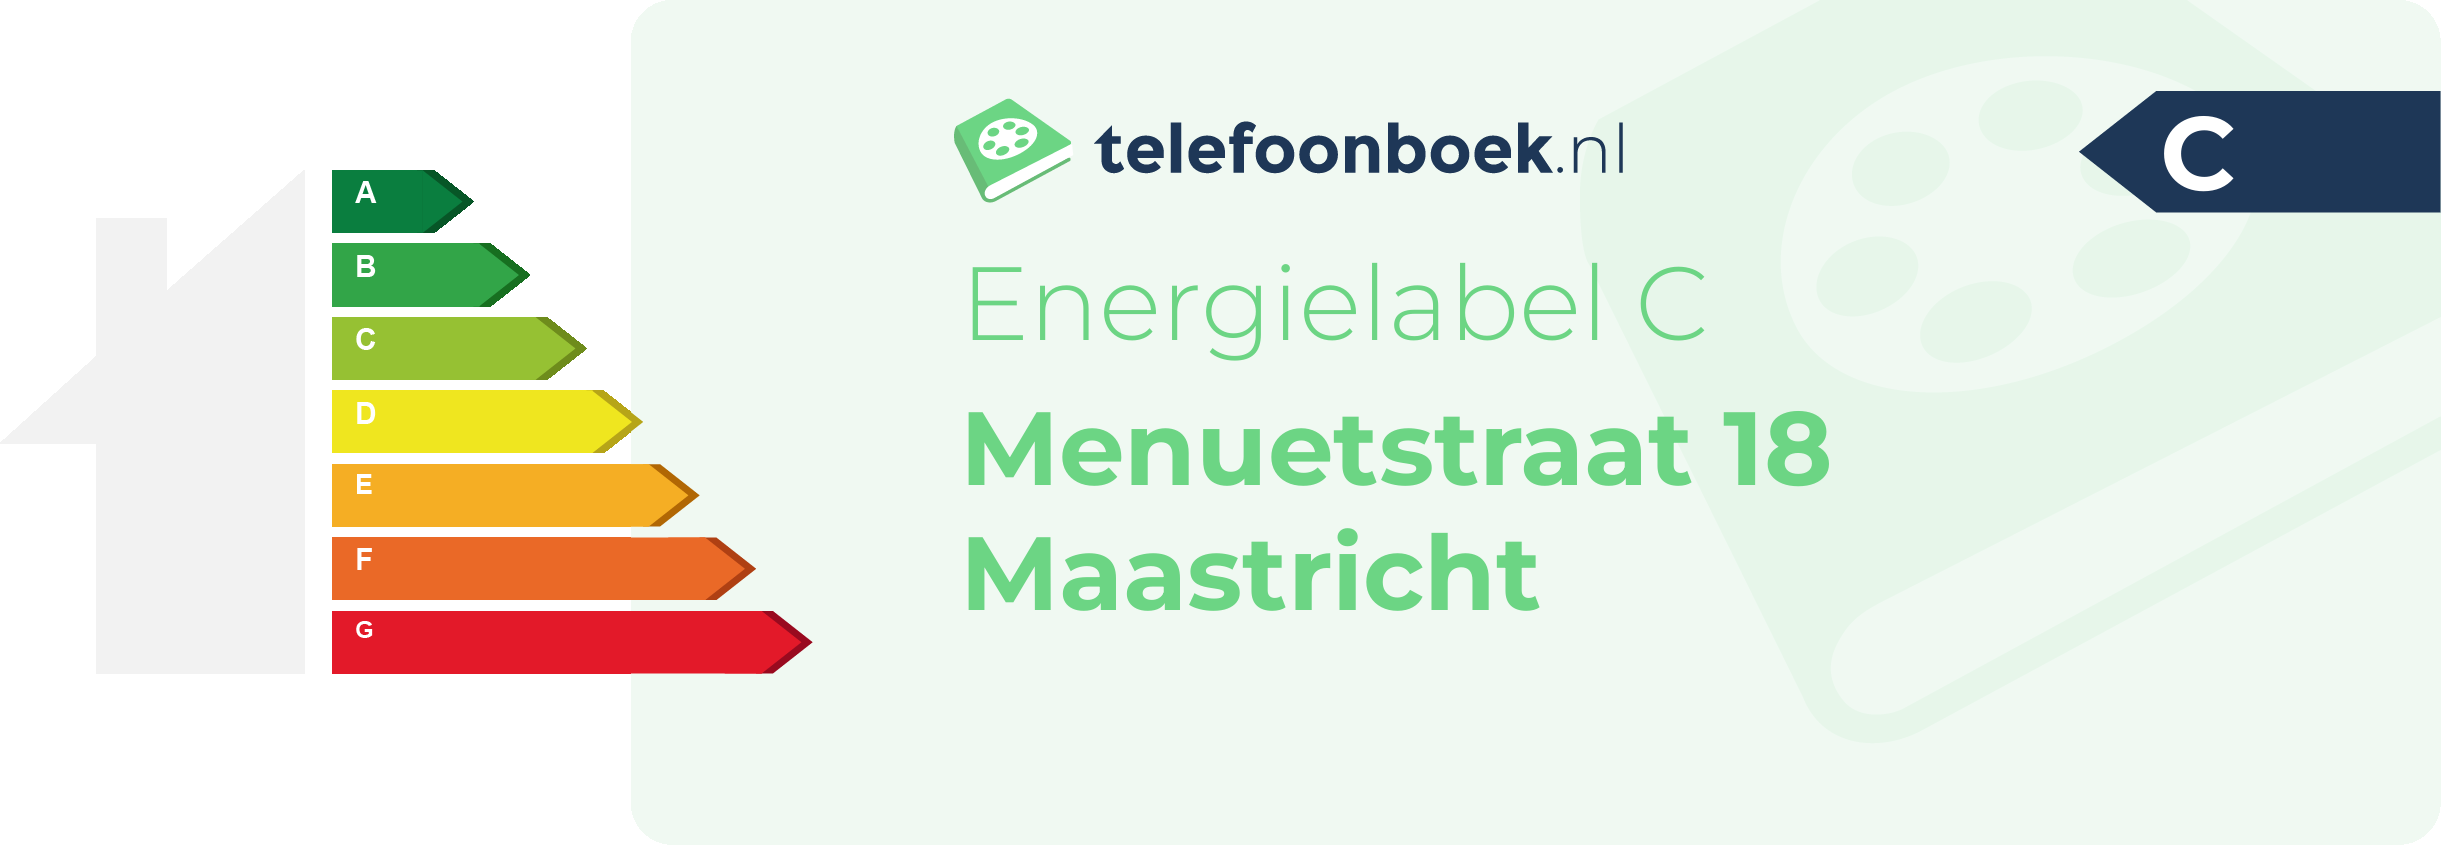 Energielabel Menuetstraat 18 Maastricht